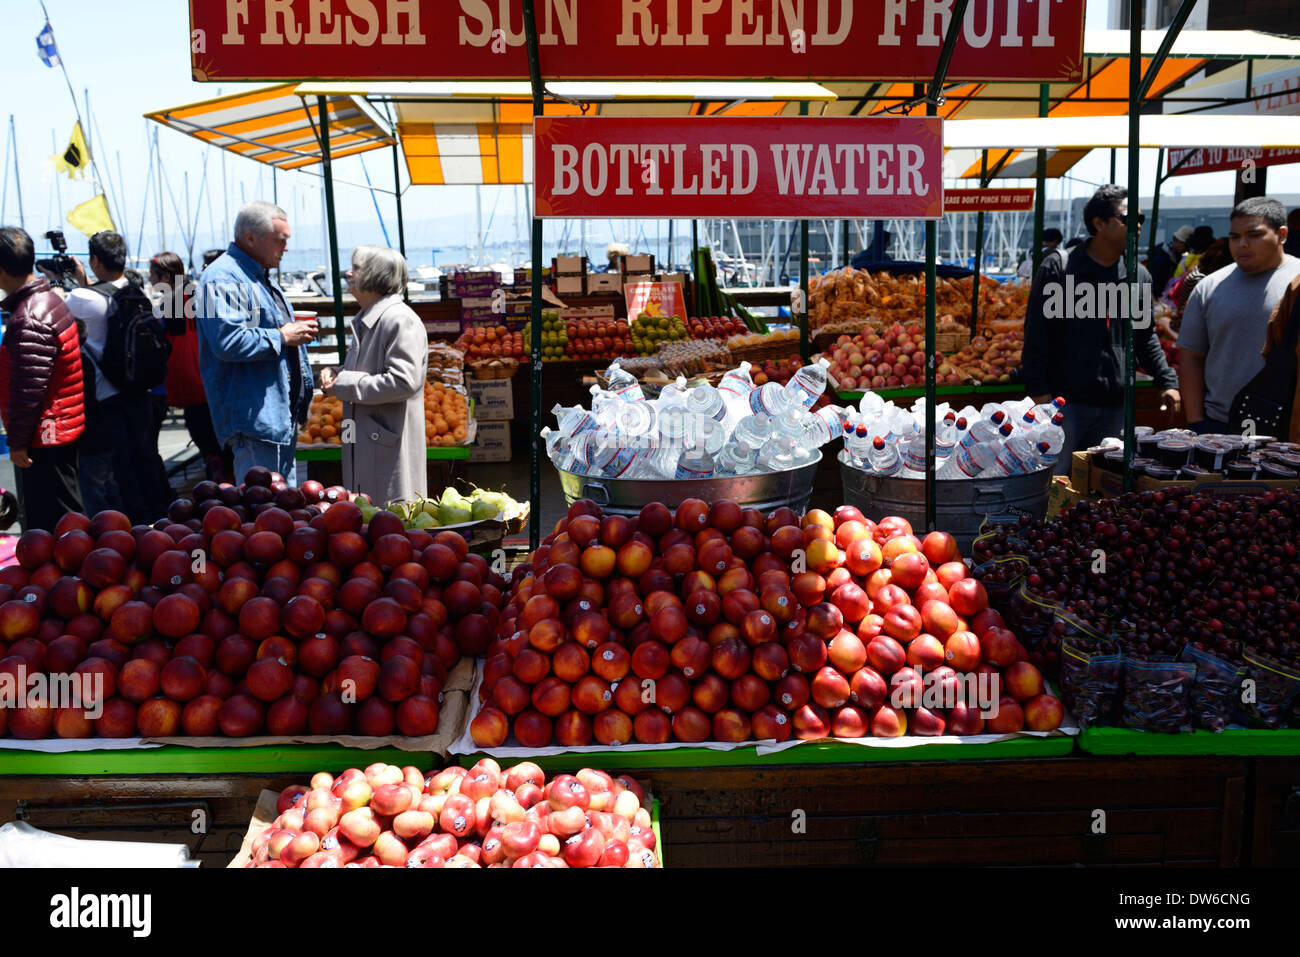 Vente Vente d'étal de fruits Nectarines Cerises stand alimentaire pier 39, Fisherman's Wharf San Francisco Californie Banque D'Images